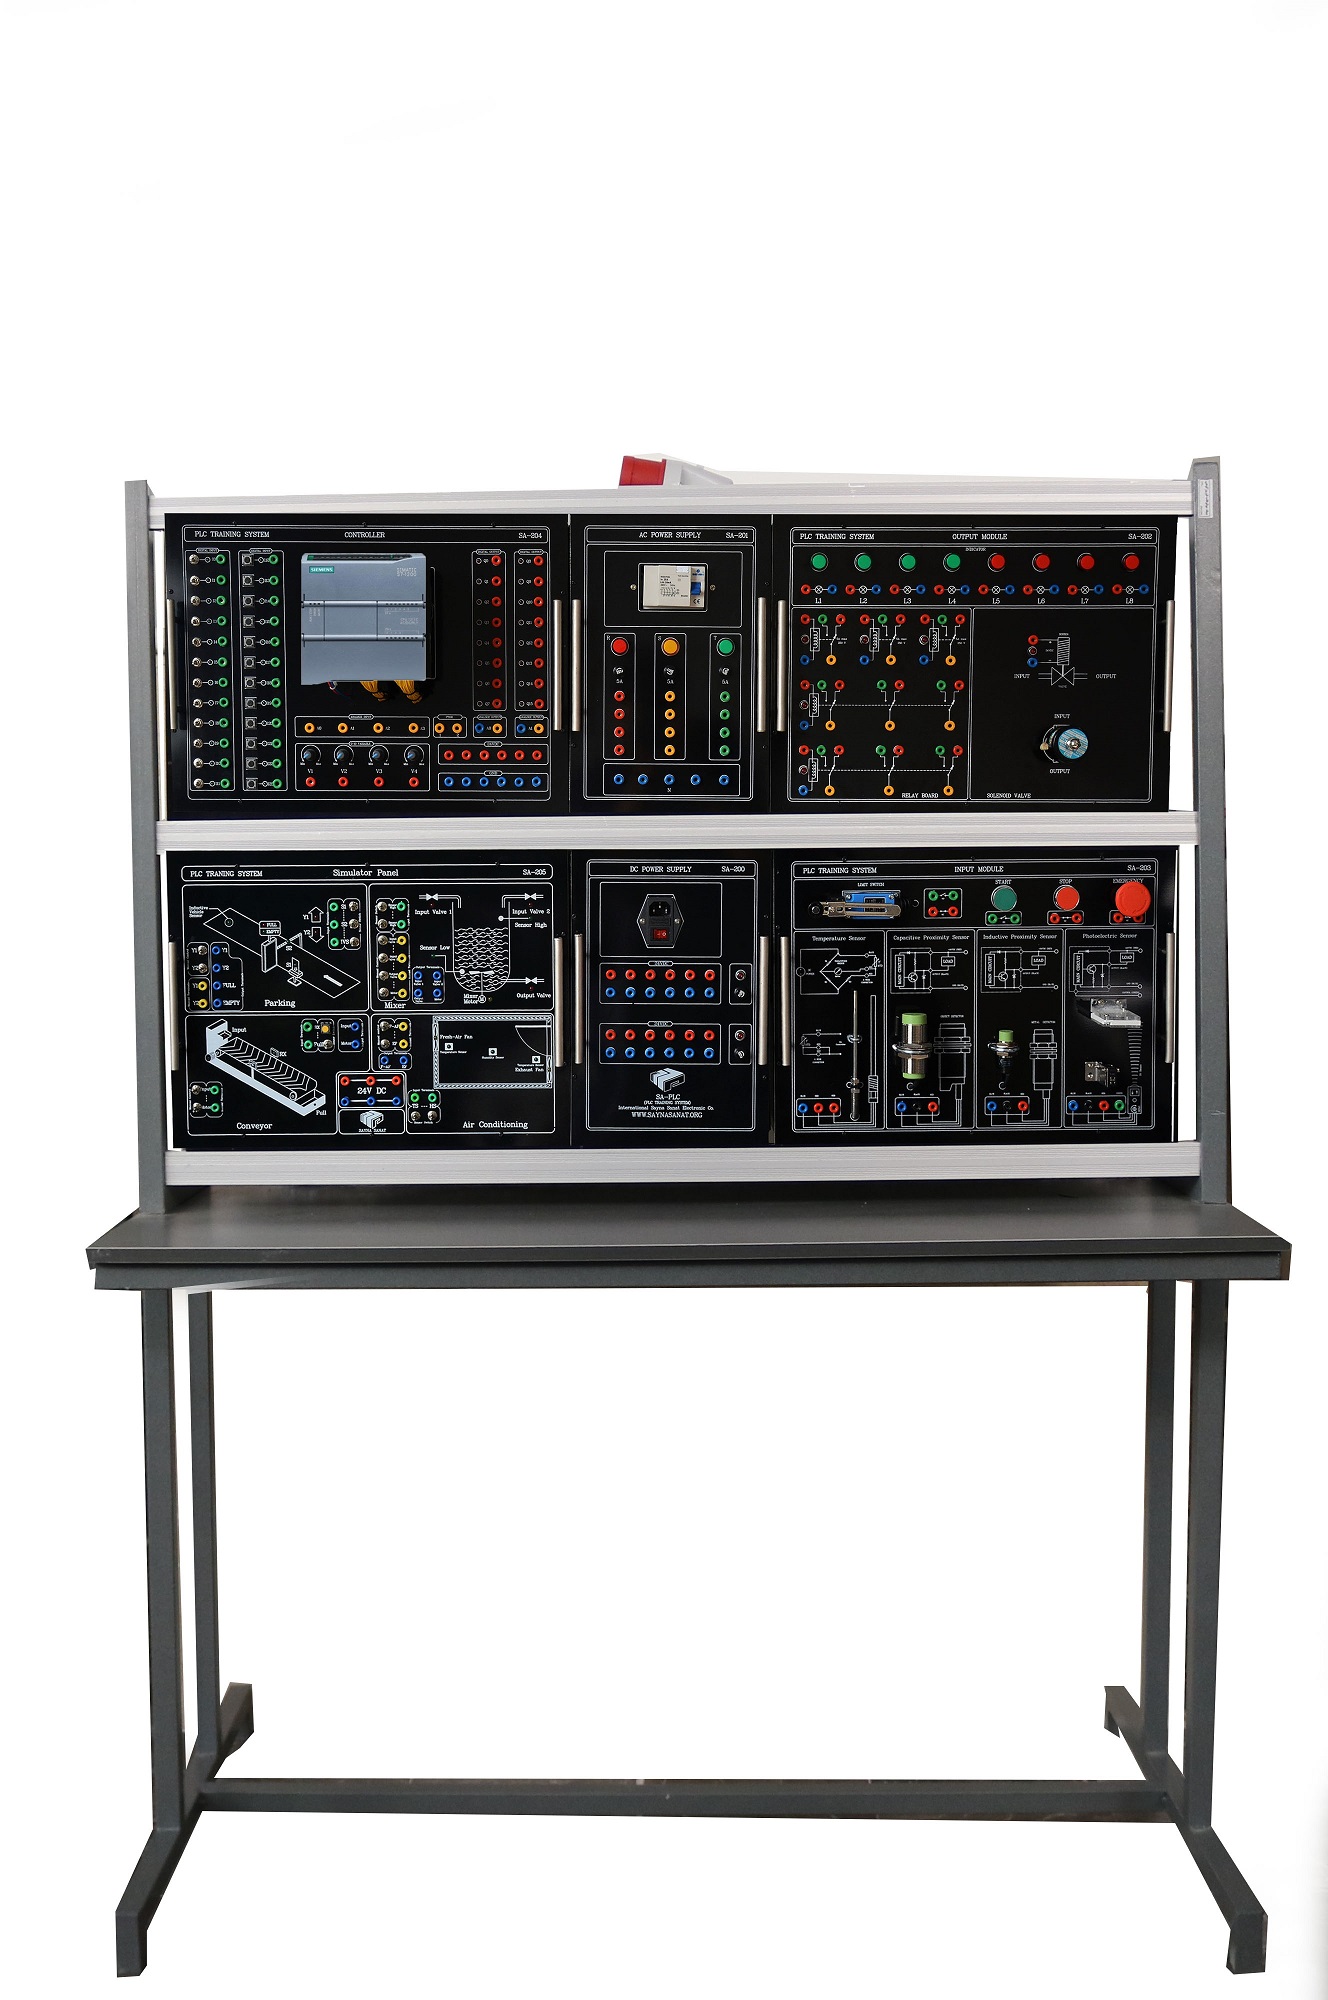 سیستم آموزشی کنترل کننده صنعتی plc- 1200